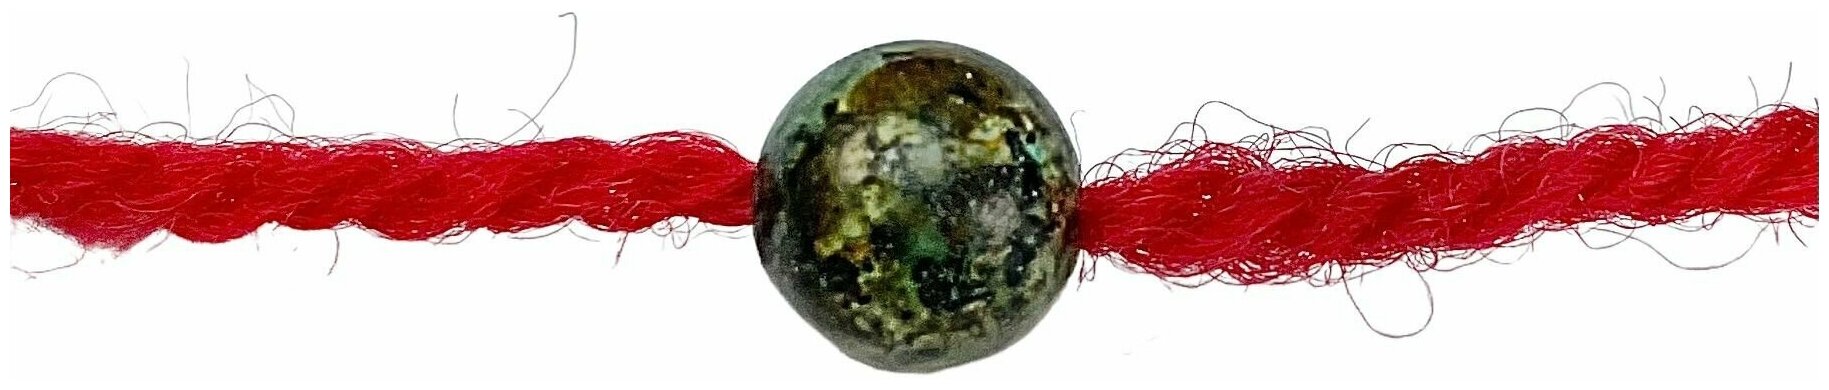 Браслет-нить Grow Up Браслет талисман красная нить с натуральным камнем Яшма моховая (Кровь дракона), 8 мм, яшма